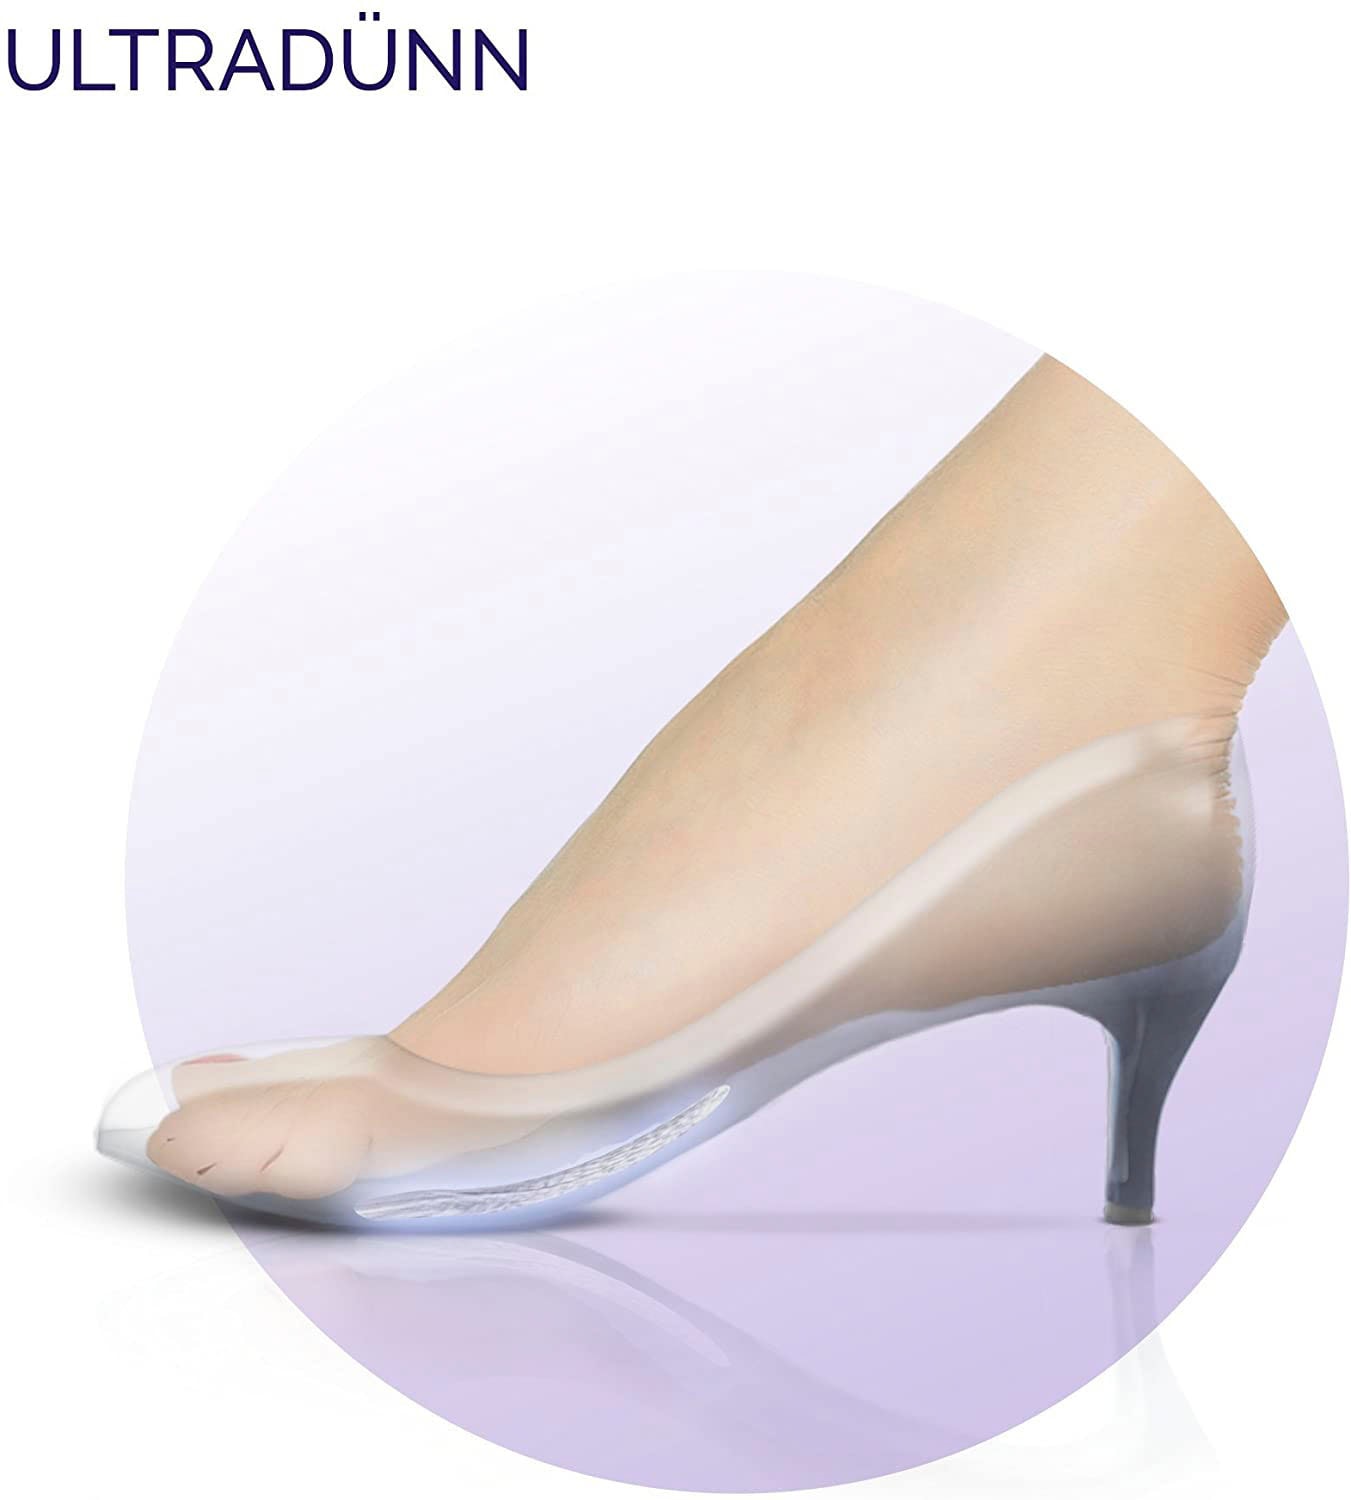 Scholl Gelpolster »Party Feet Ballenpolster«, Rutschfeste Einlegesohlen mit GelActiv Technologie für Damenschuhe